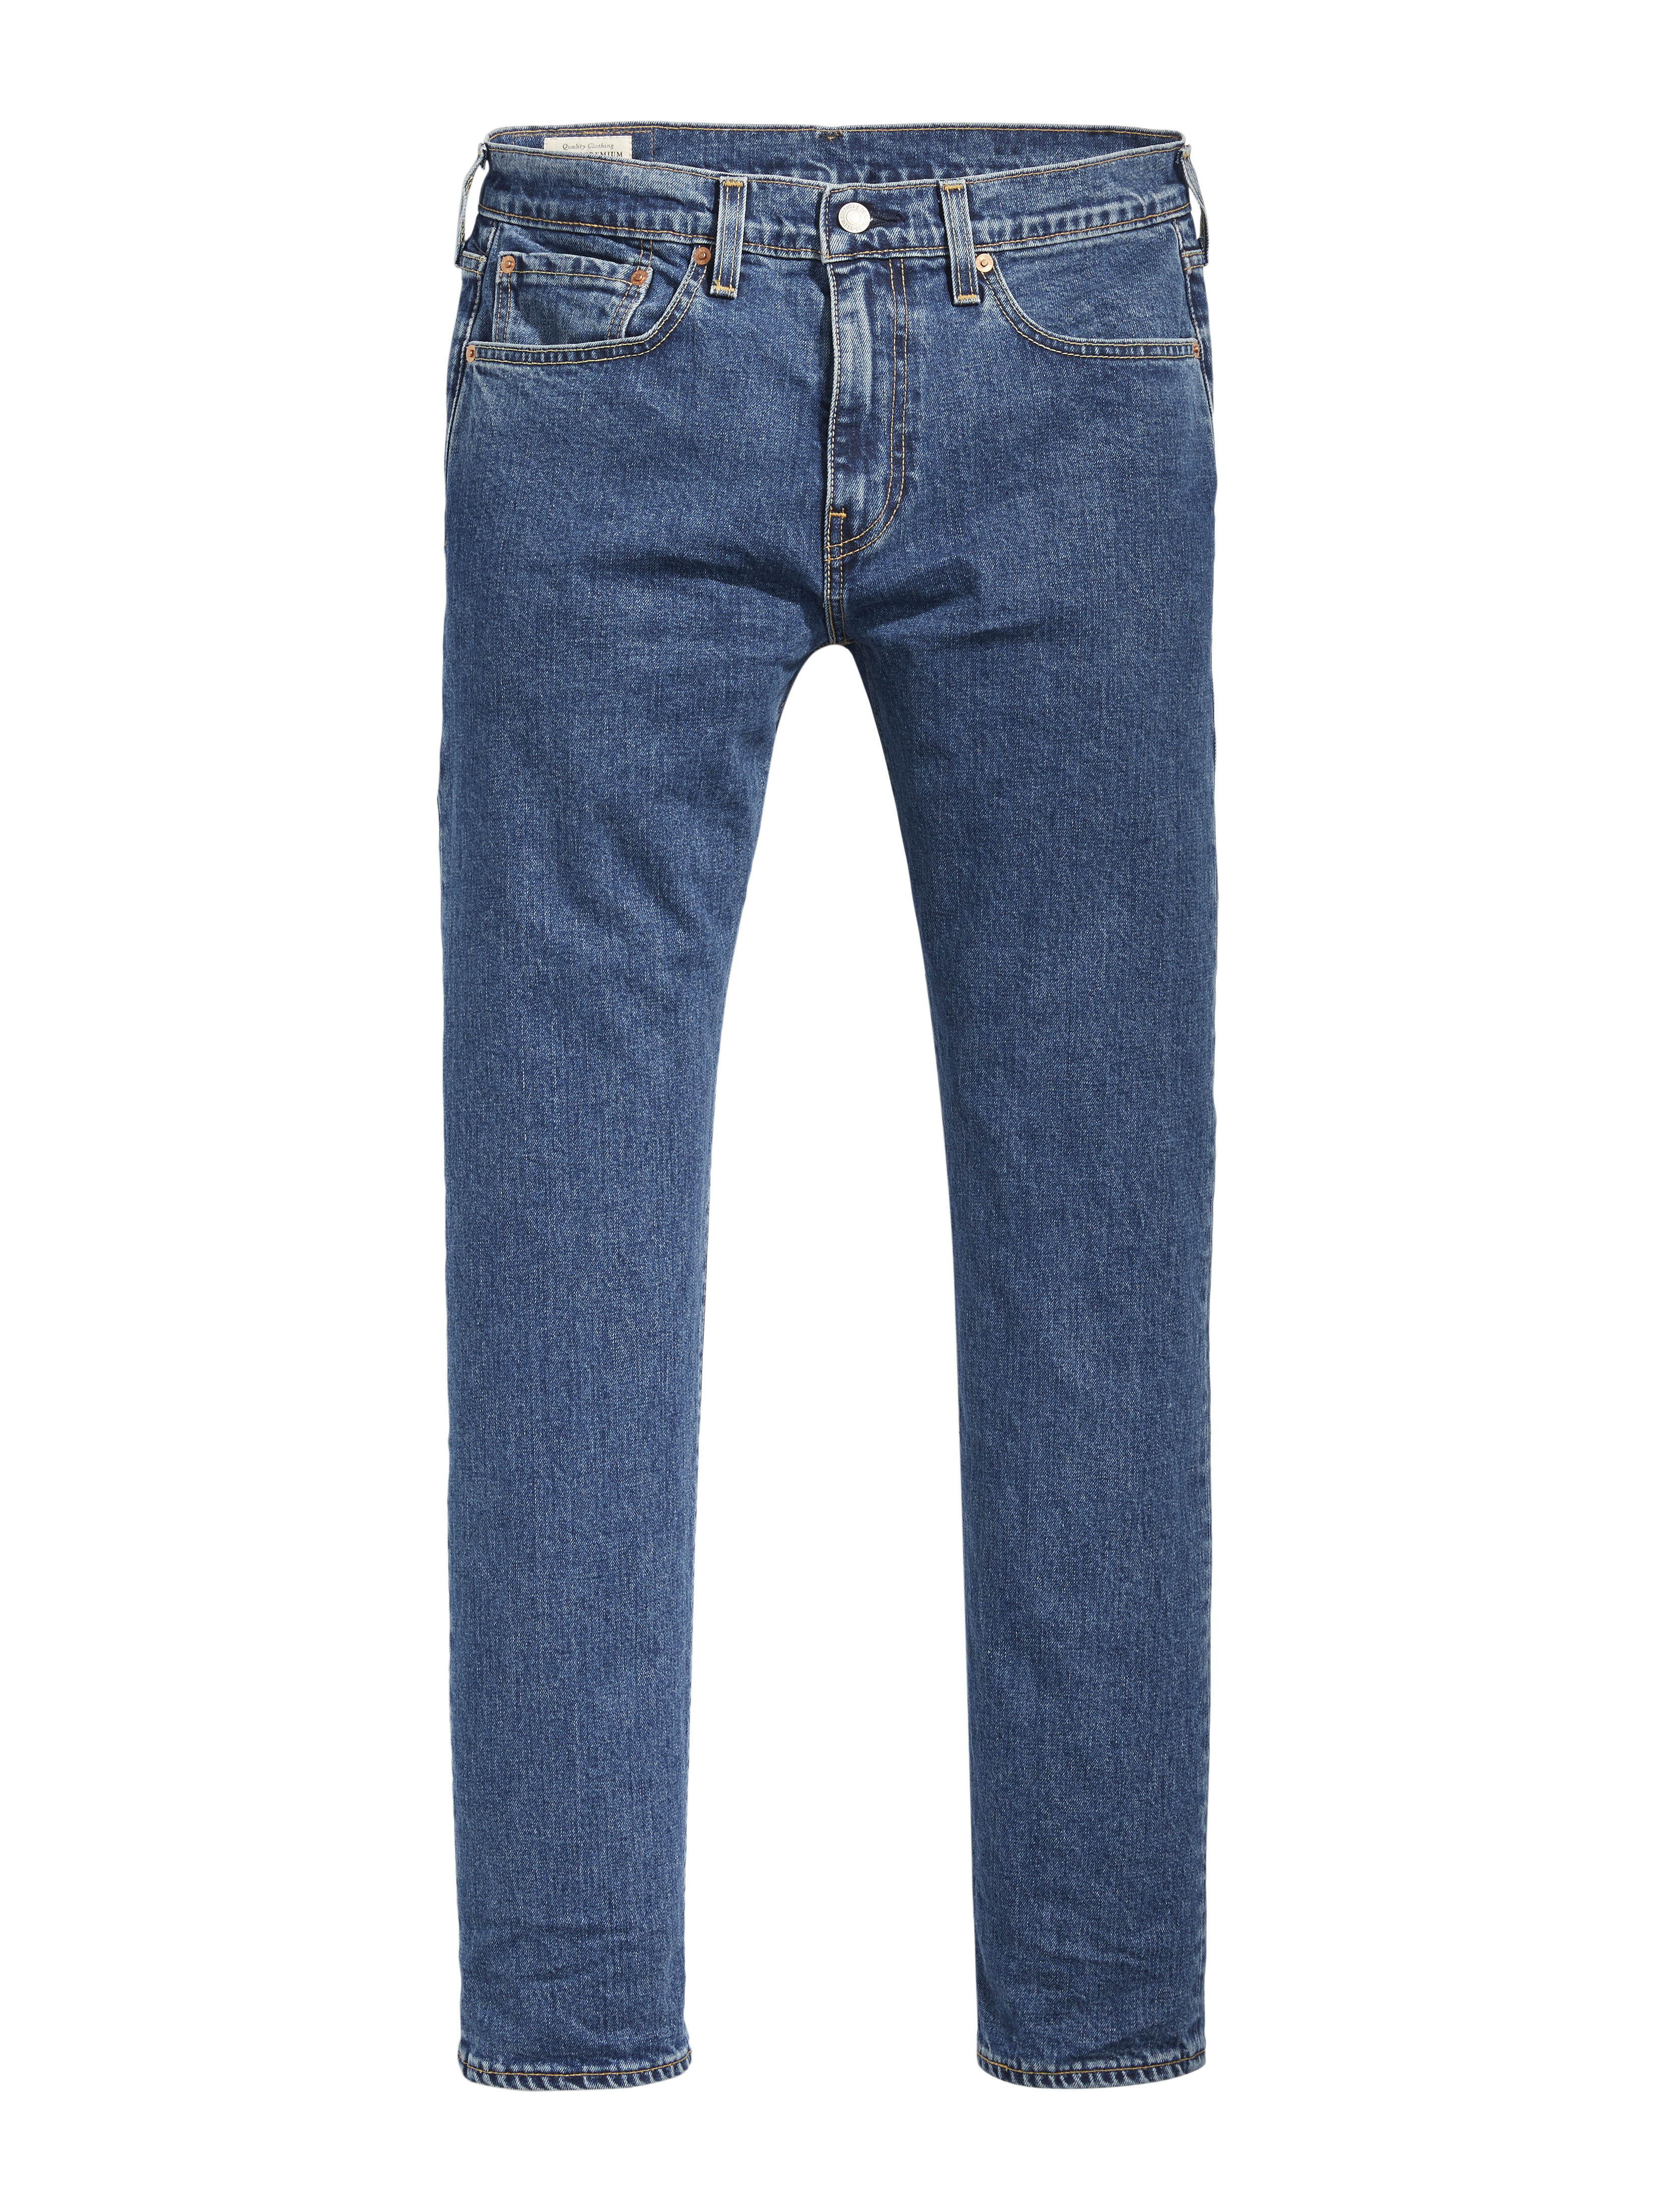  502 Jeans, Indigo, W29/L32